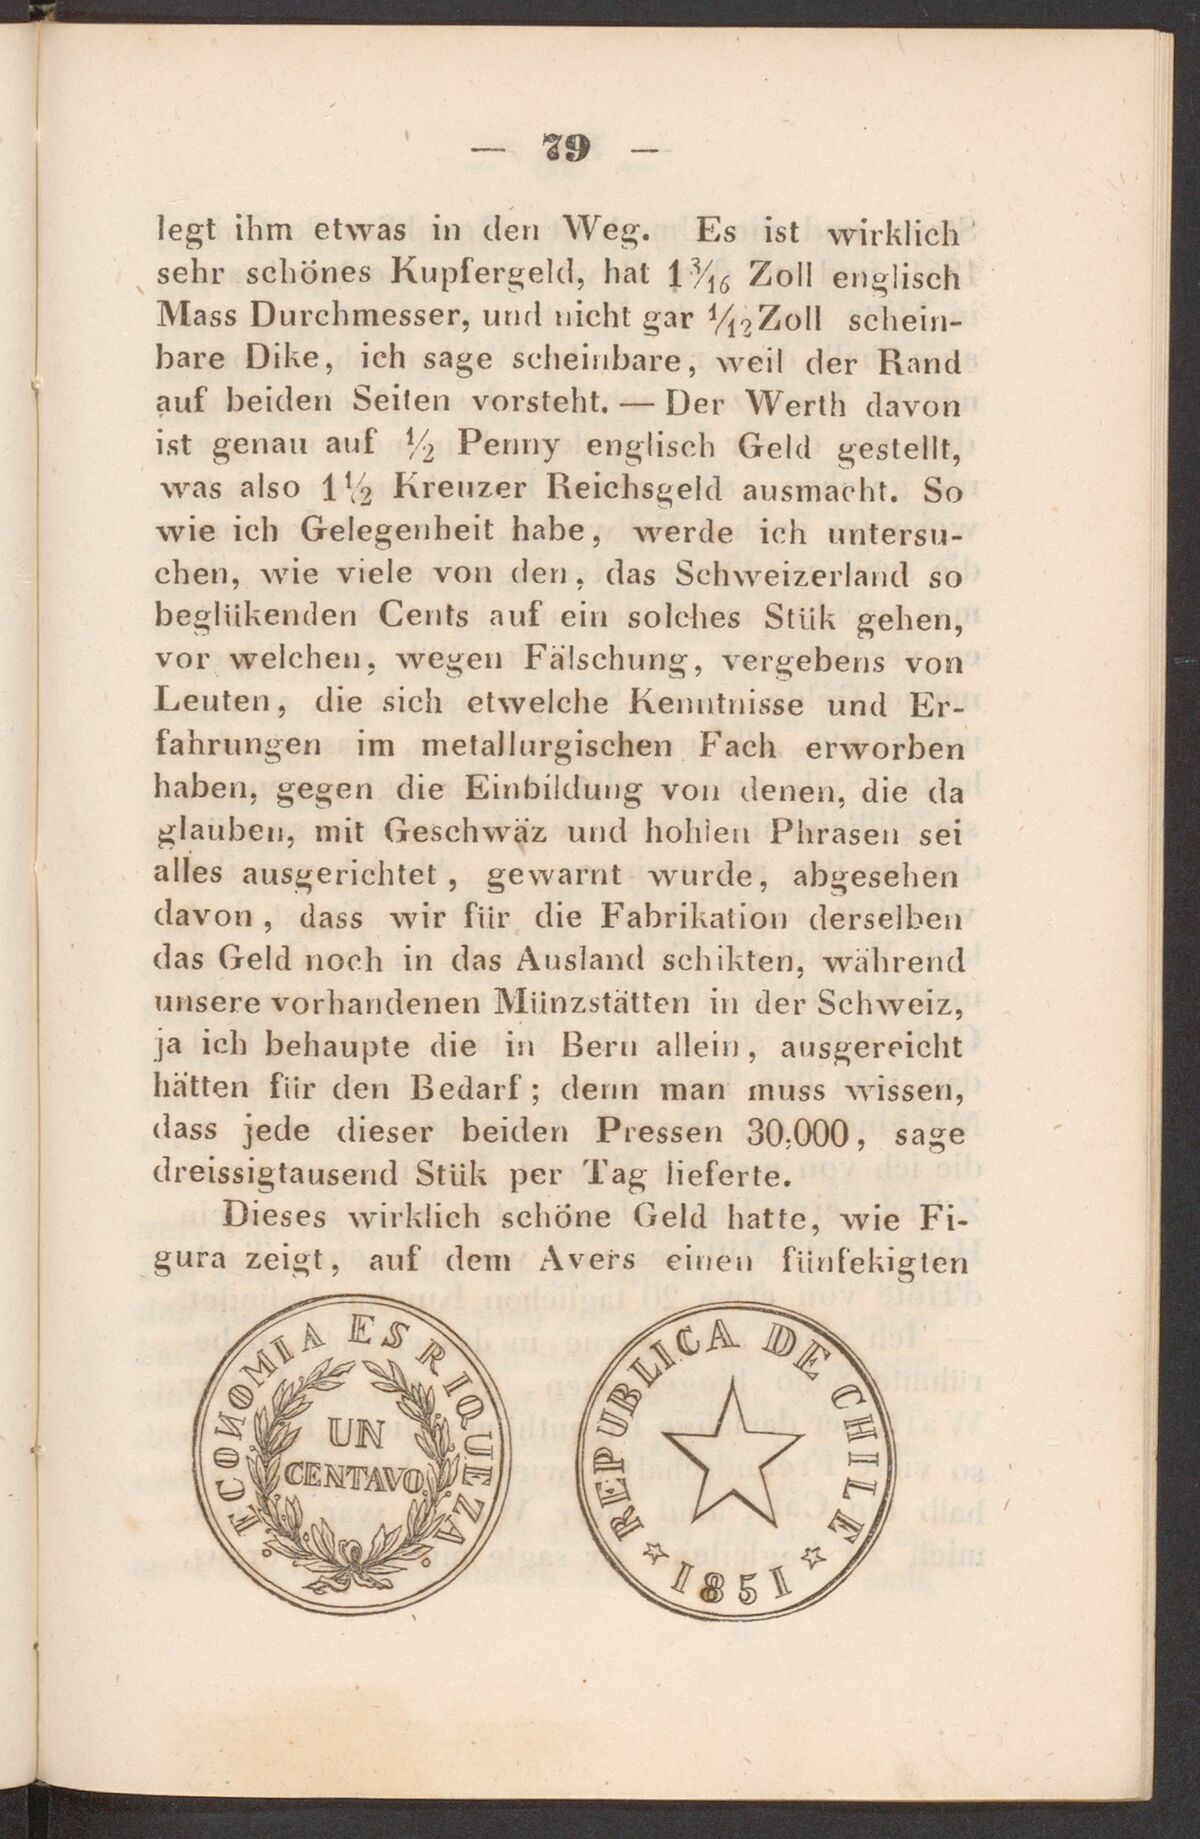 GFD 3/214: Abbildung der chilenischen Münze (Fischers Reisetagebuch 1851, Seite 79)